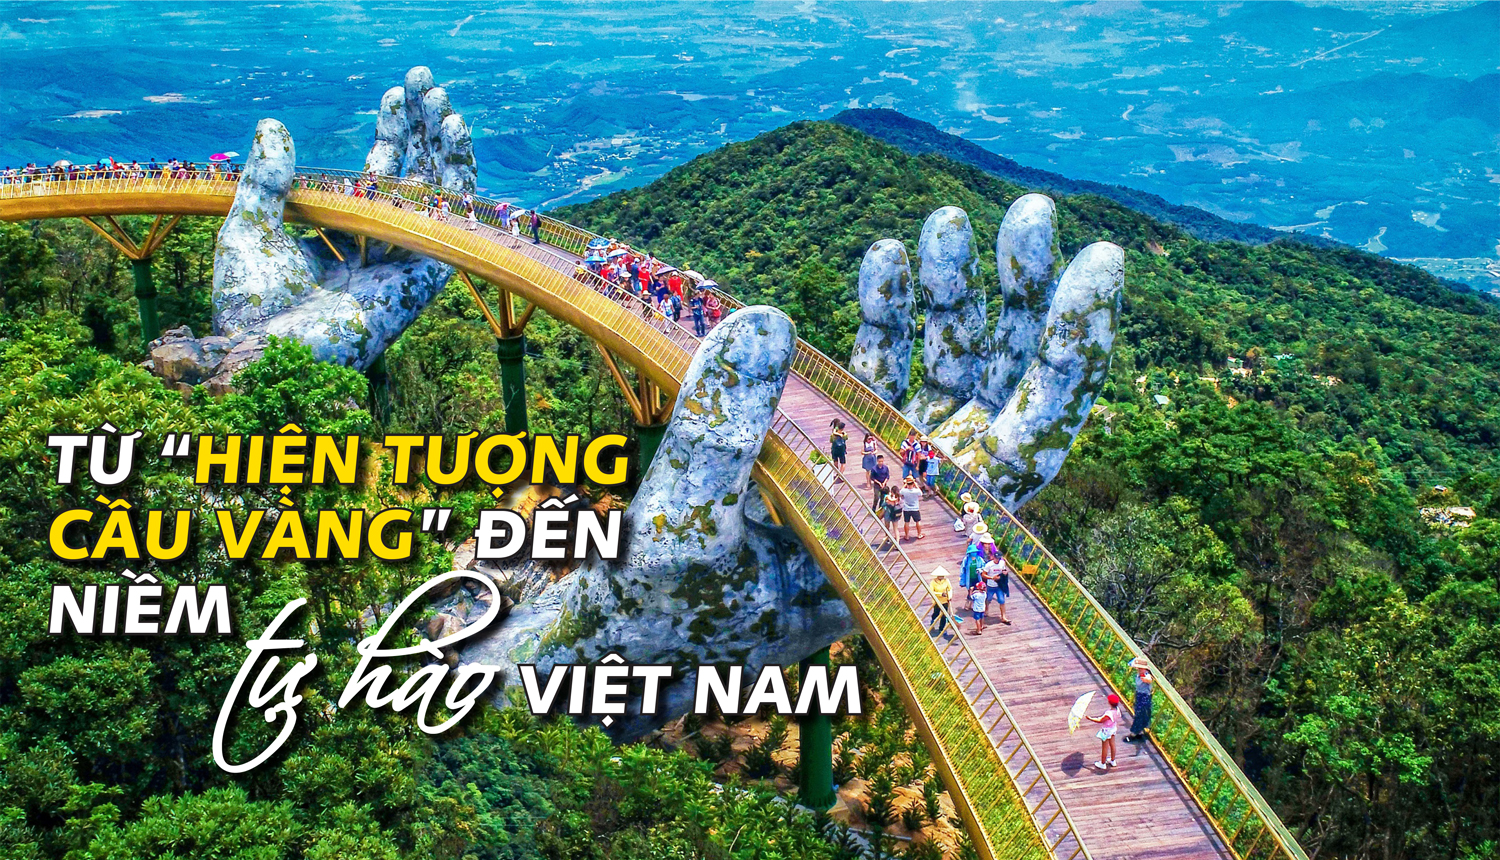 "Cầu Vàng" - Biểu tượng du lịch Việt Nam trên bản đồ thế giới